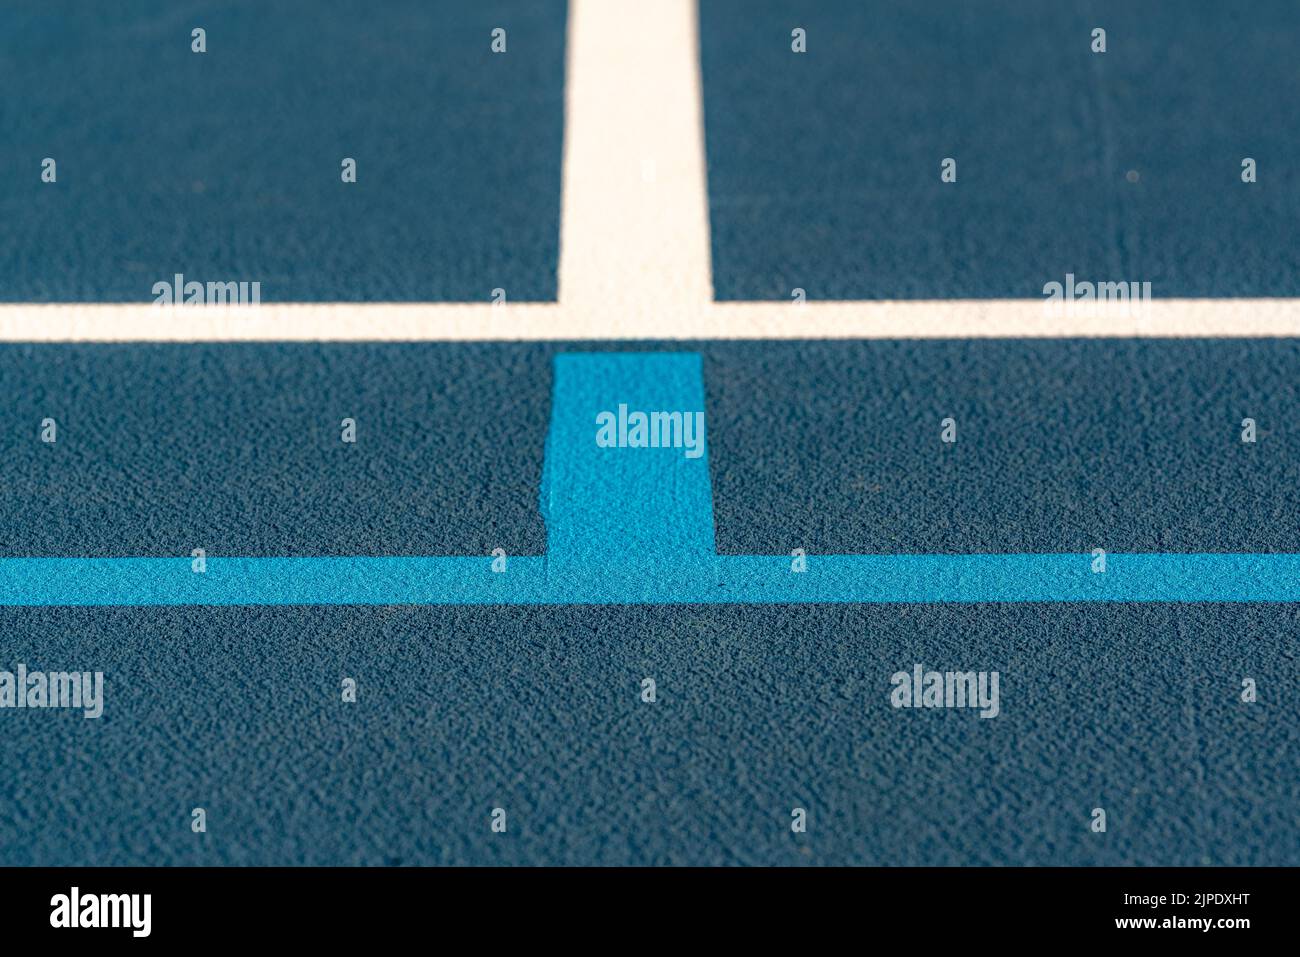 Nahaufnahme des neuen blauen Tennisplatzes im Freien mit hellblauen Pickleball-Linien. Stockfoto